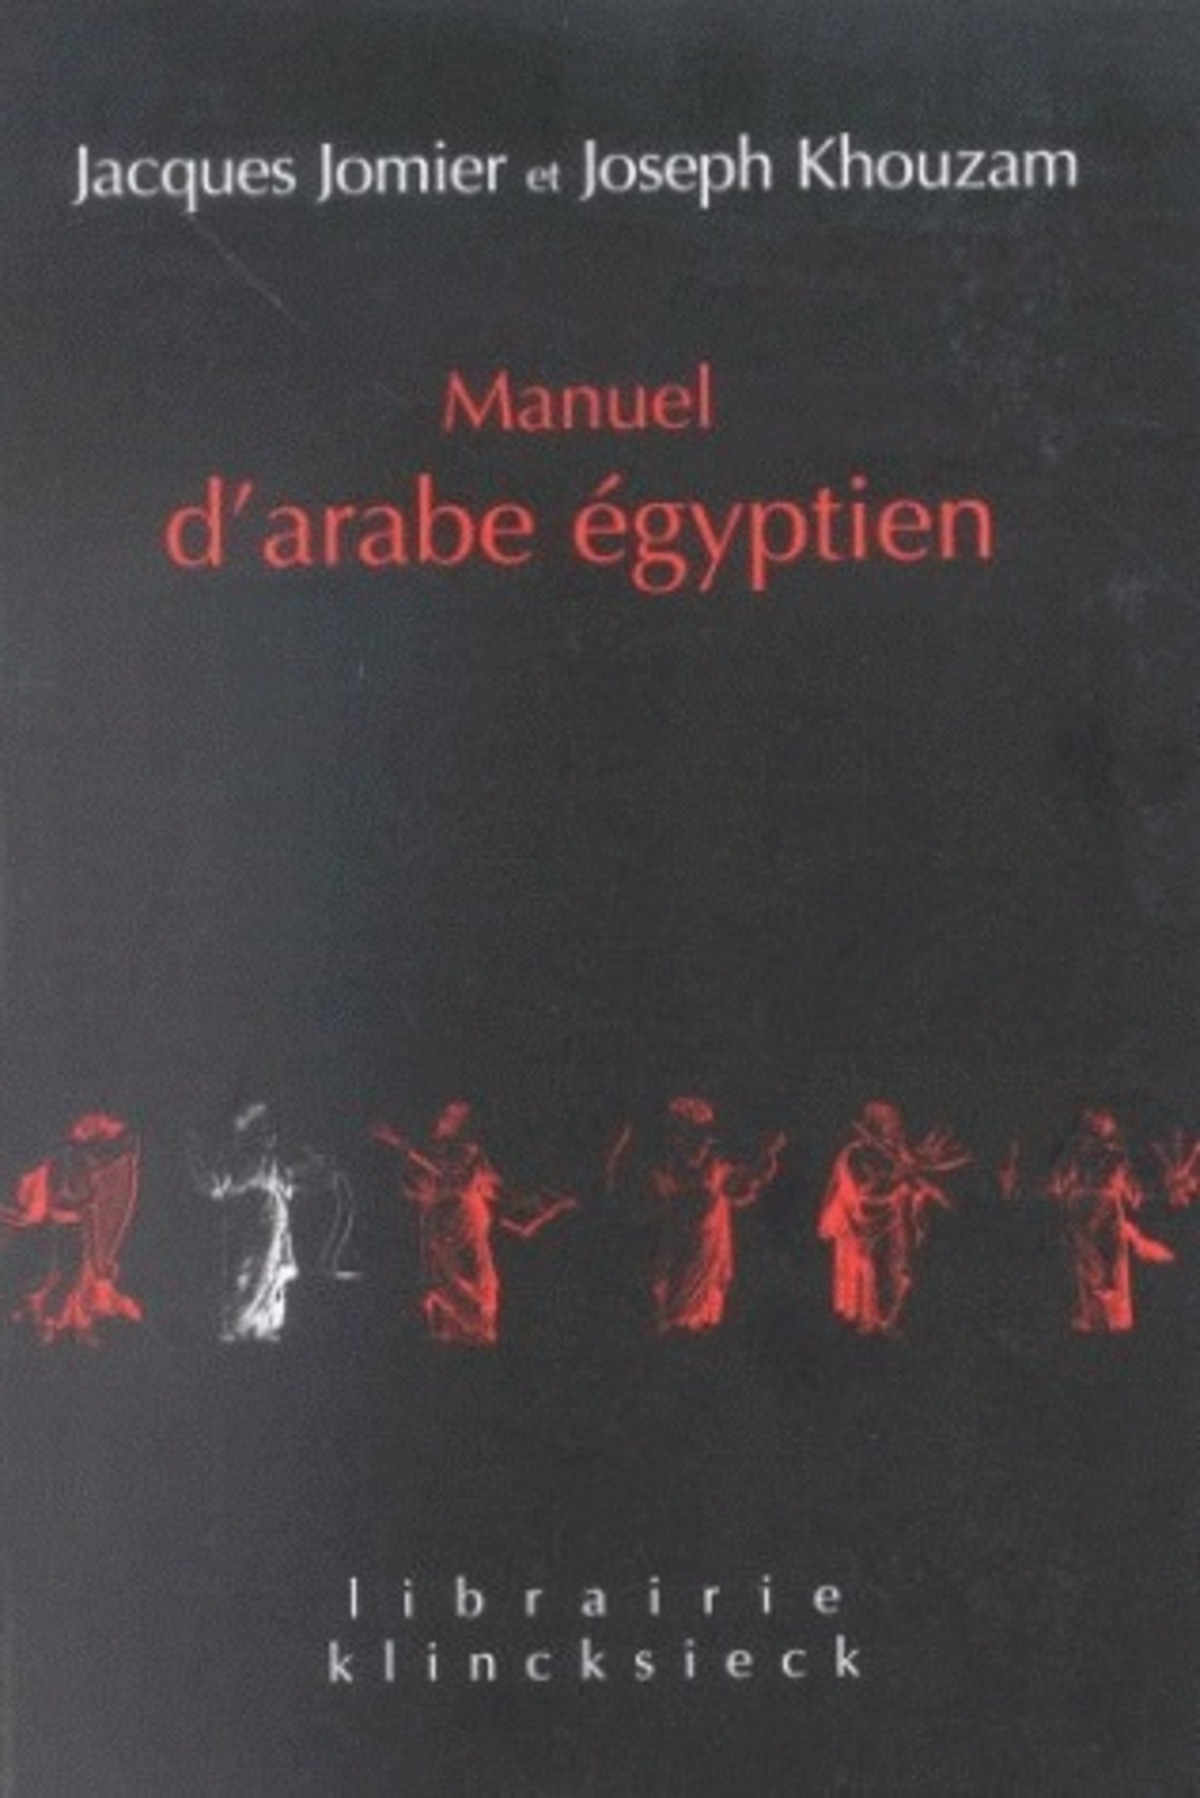 Manuel d'arabe égyptien